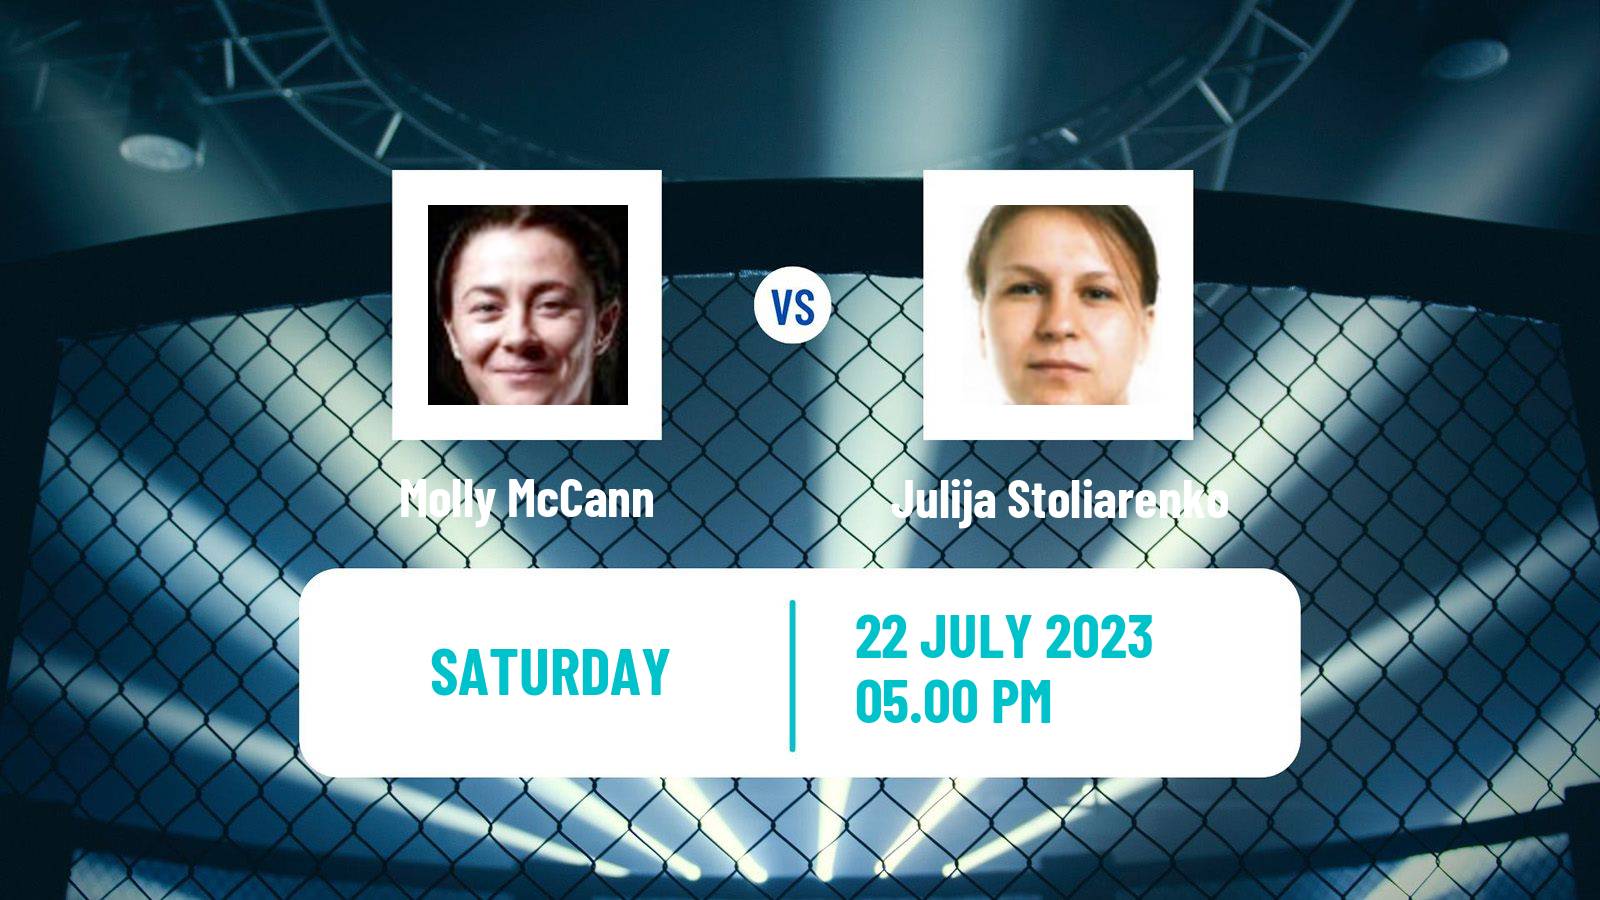 MMA Flyweight Women UFC Molly McCann - Julija Stoliarenko